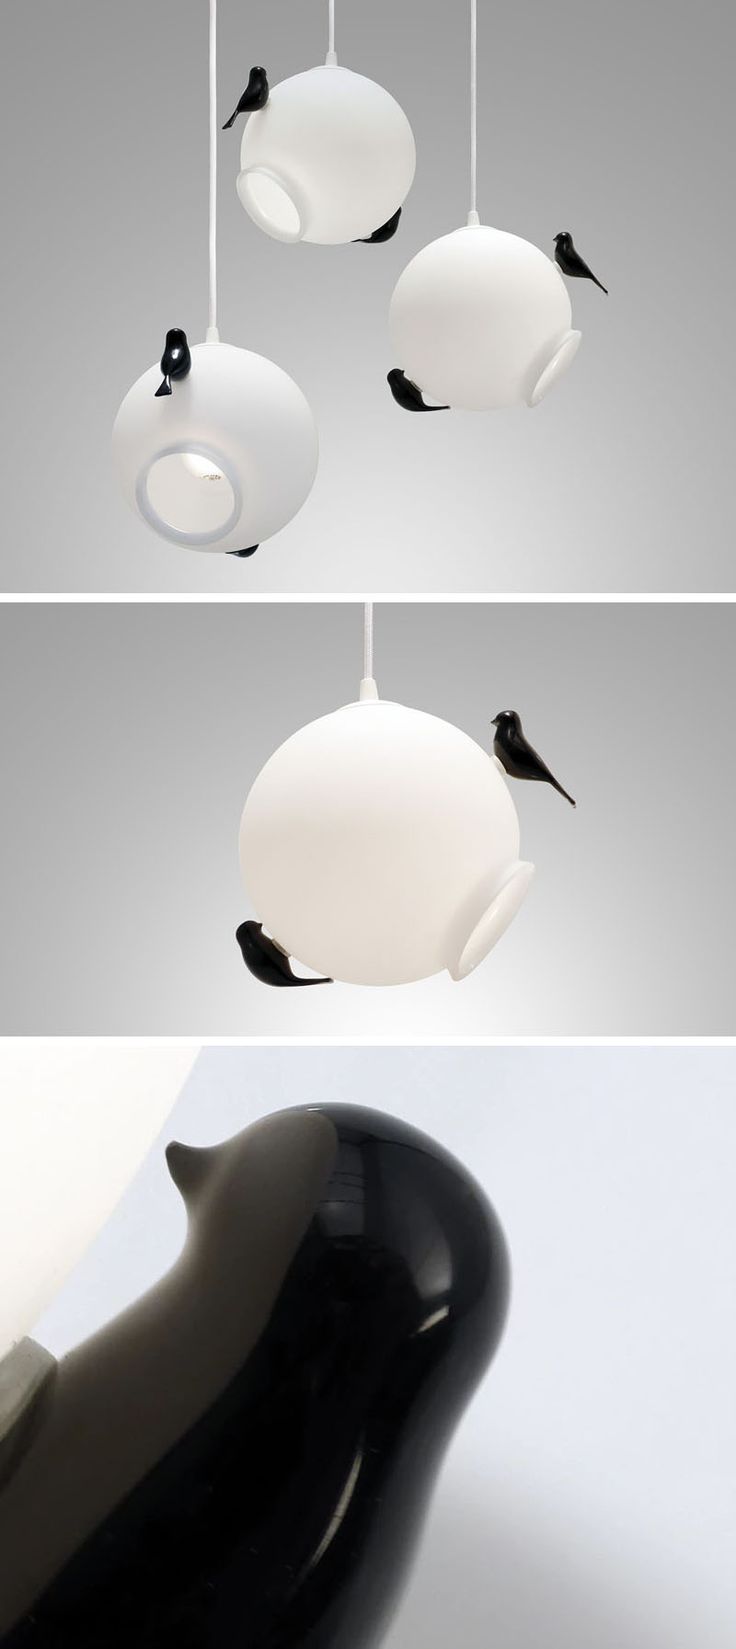 Designer Ricardo Santo has created the Ninho de Andorinhas, a modern pendant lam...